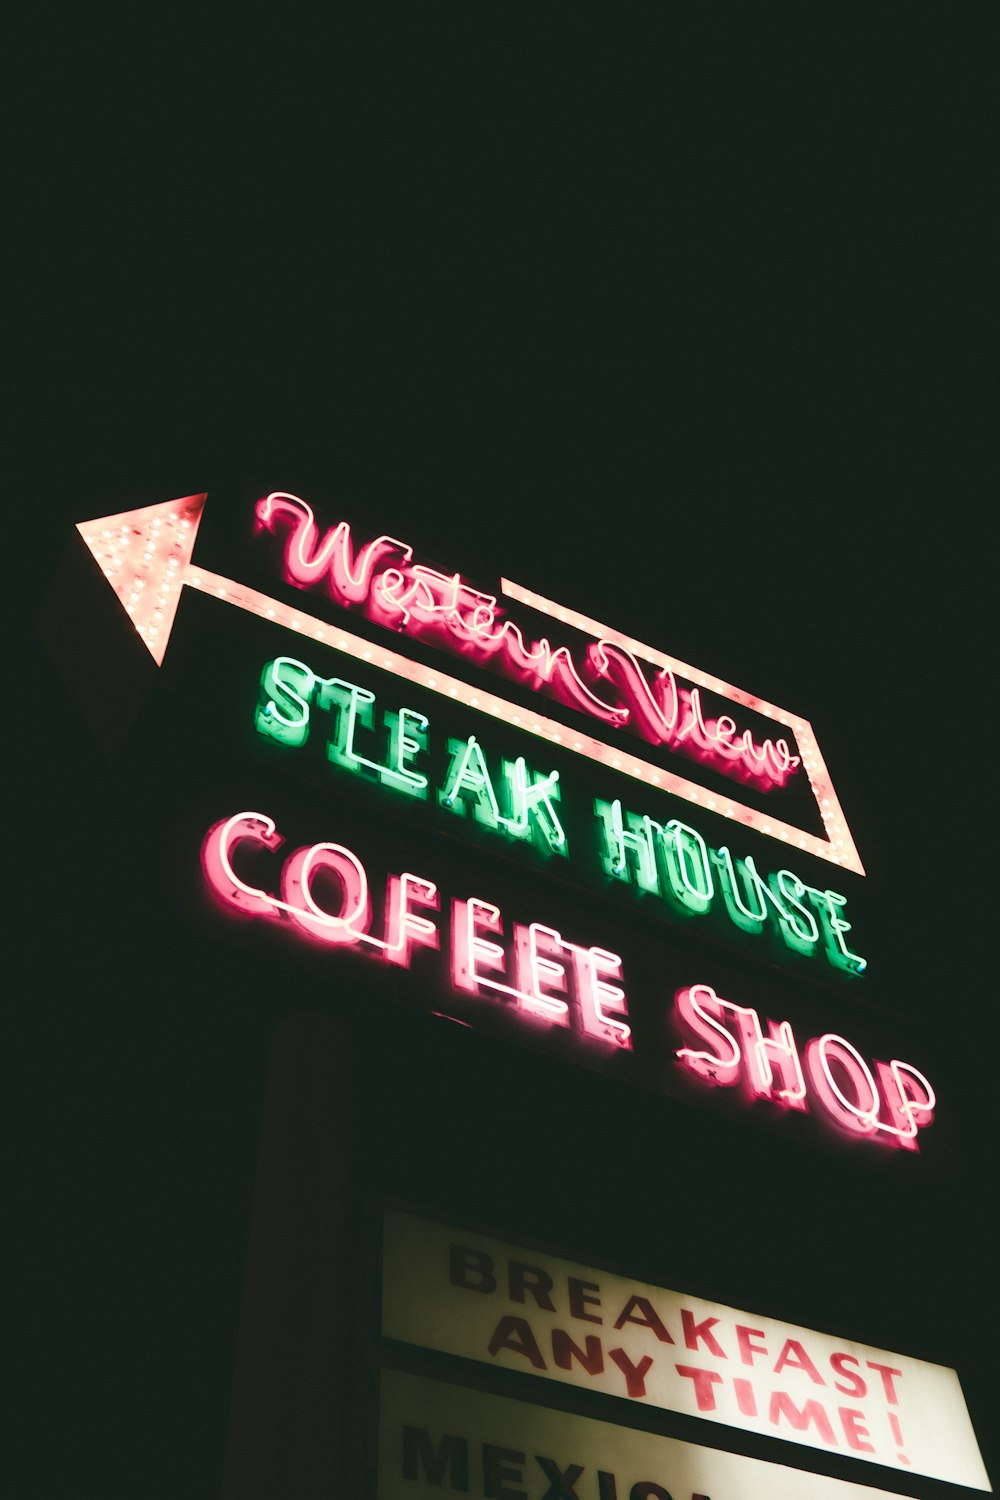 ウエスタンビューステーキハウスのローアングル写真 夜に点灯するコーヒーショップのネオンサイン